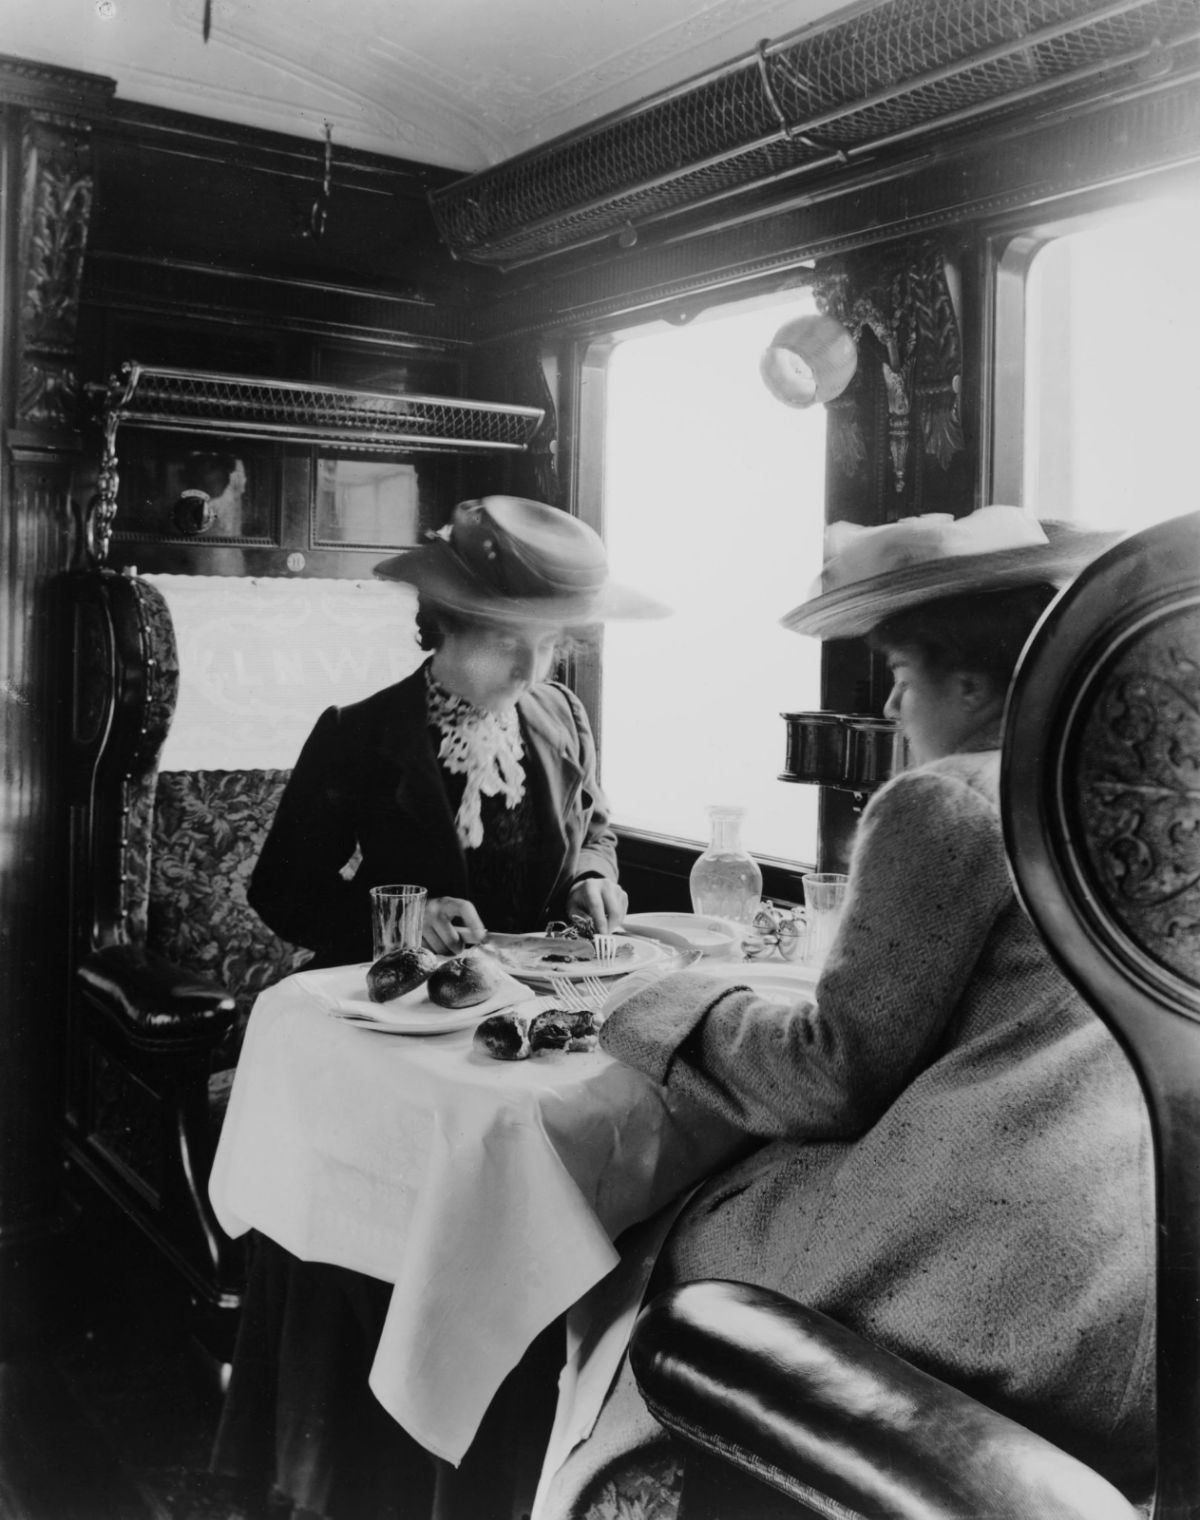 Fotos antigas mostram como eram glamorosas as viagens de trem entre 1900-1940 01